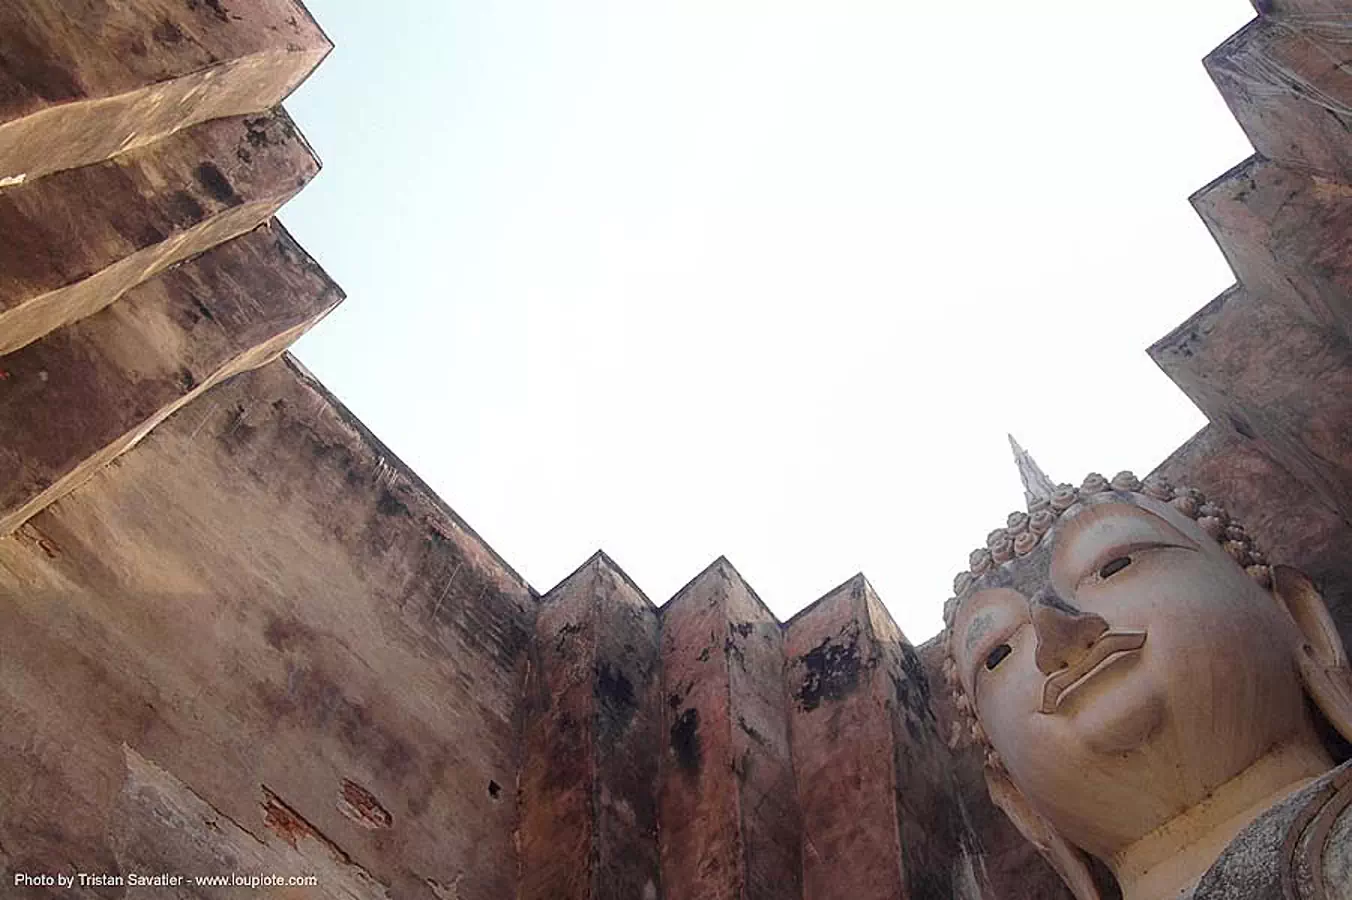 พระพุทธรูป - buddha statue - วัดศรีชุม - wat si chum - อุทยาน ประวัติศาสตร์ สุโขทัย - เมือง เก่า สุโขทัย - sukhothai - thailand, buddha image, buddha statue, buddhism, buddhist temple, giant buddha, sculpture, sukhothai, thailand, wat si chum, พระพุทธรูป, วัดศรีชุม, ส�\xb8\xb8โขทัย, อุทยาน ประวัติศาสตร์ สุโขทัย, เมือง เก่า สุโขทัย